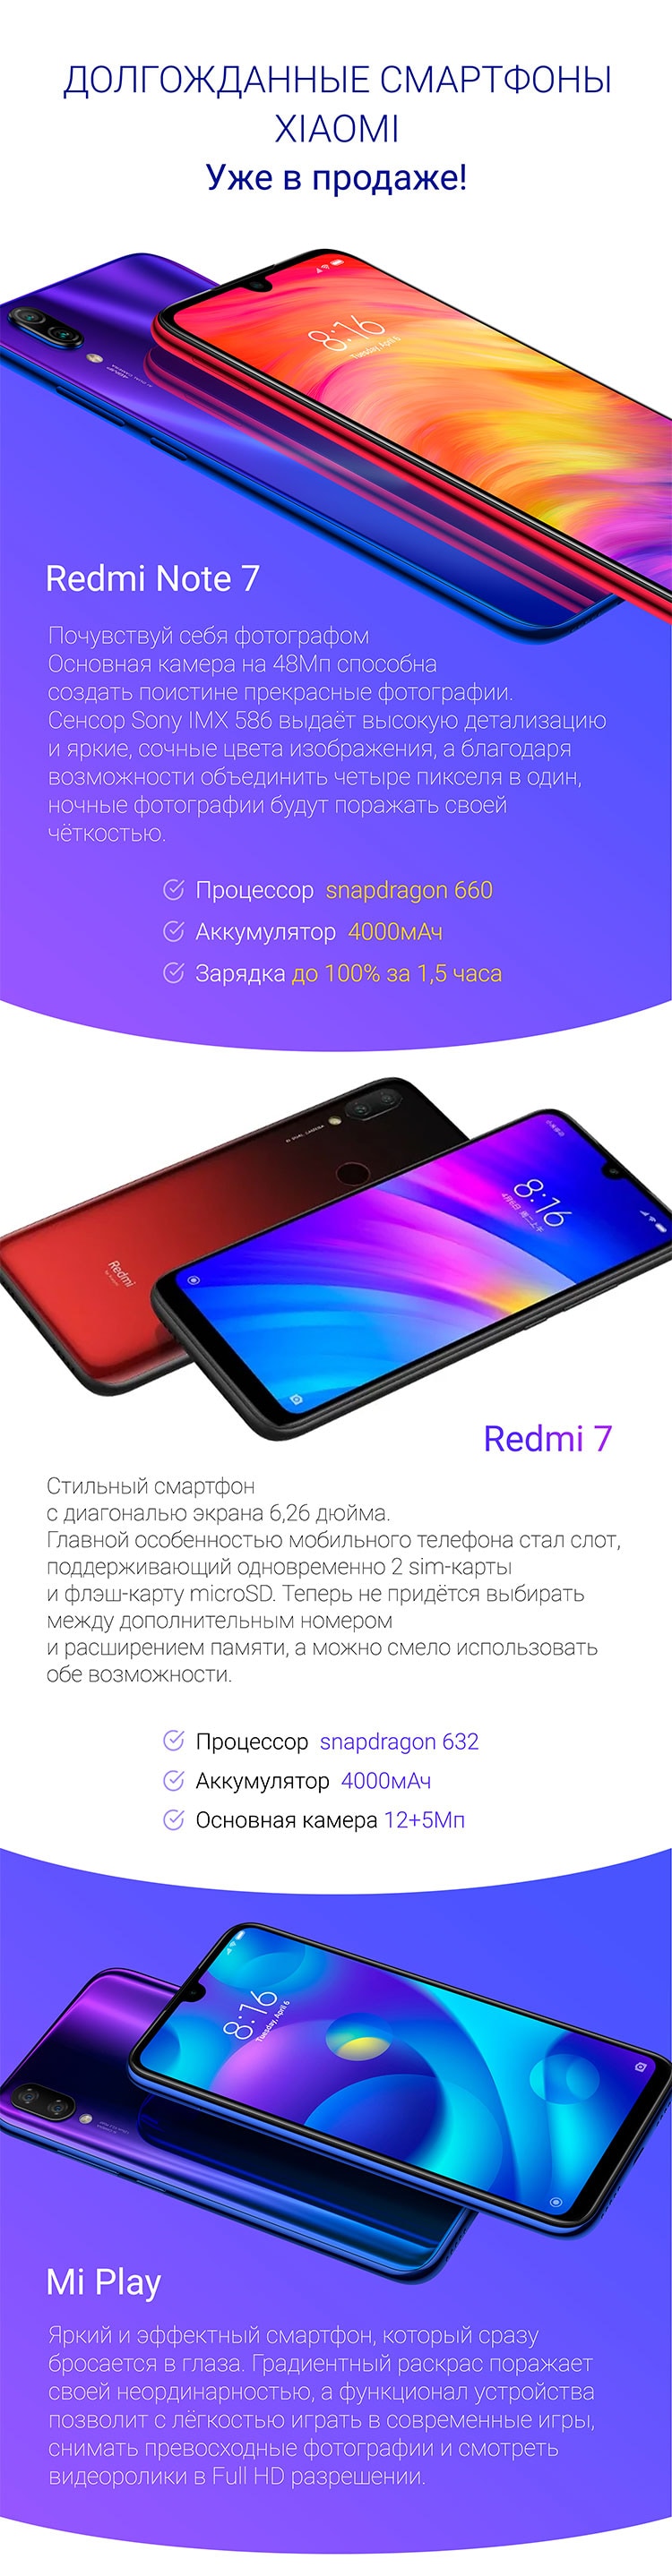 Долгожданные смартфоны Redmi 7, Redmi Note 7, Xiaomi Play уже в продаже!